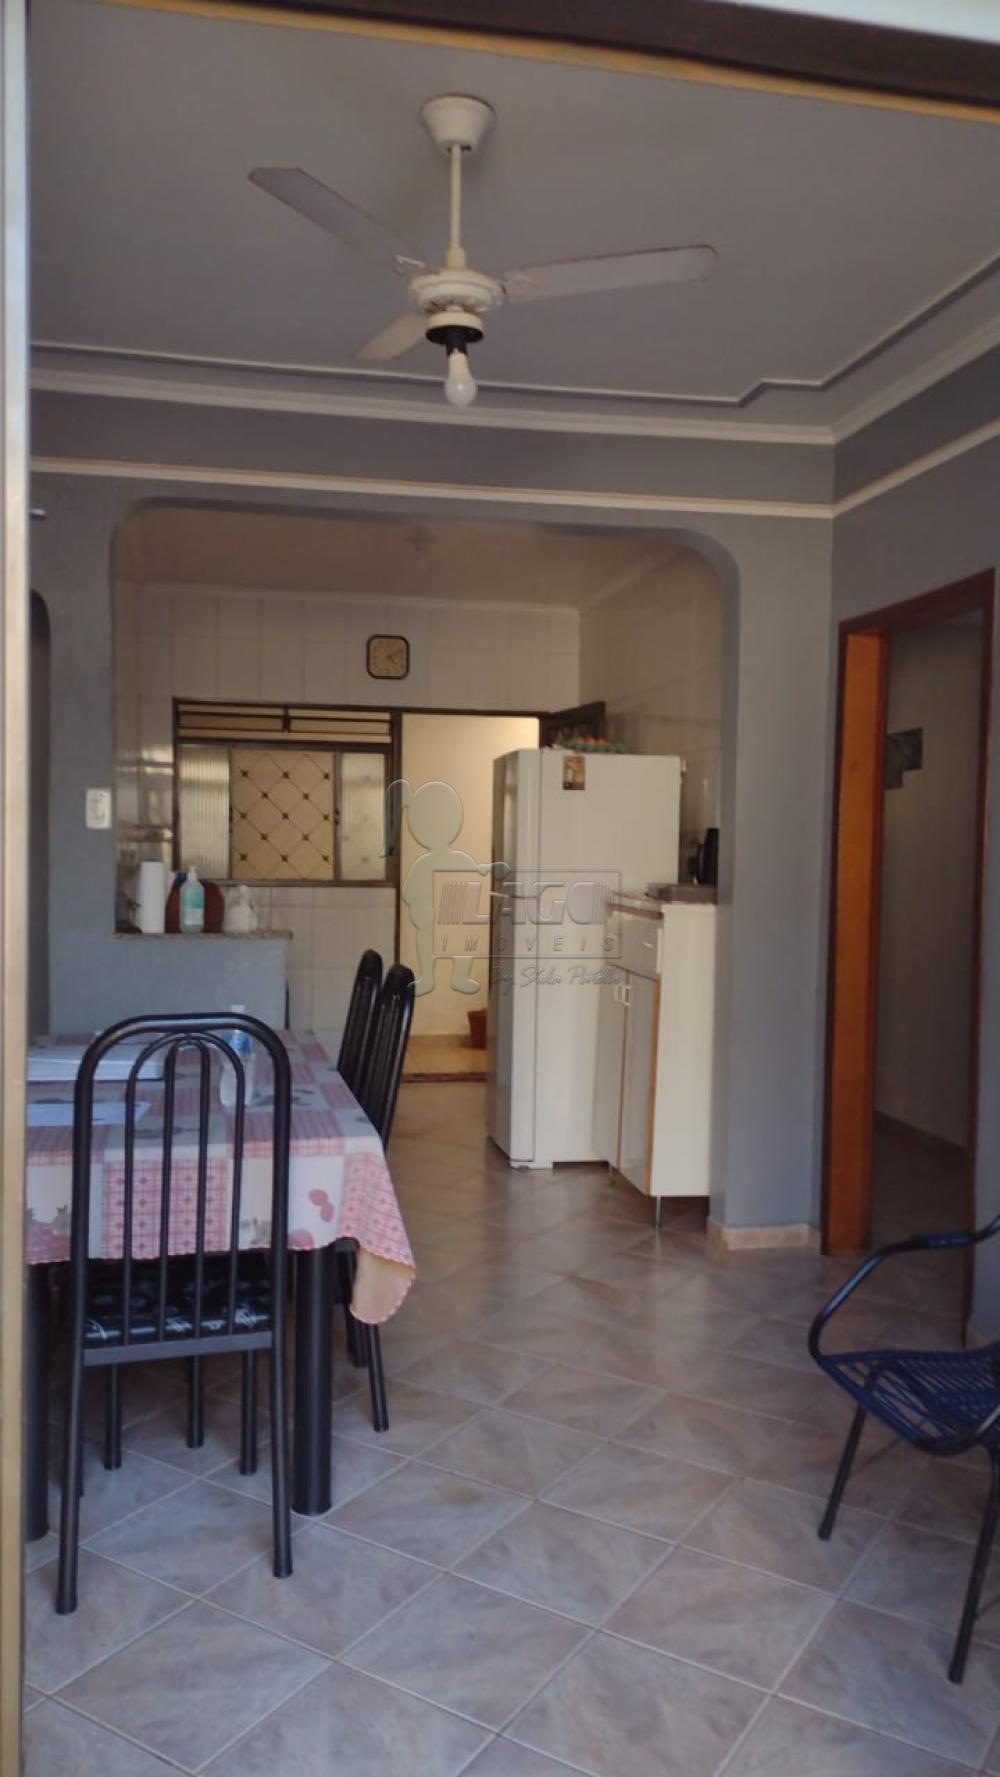 Comprar Casa / Padrão em Ribeirão Preto R$ 530.000,00 - Foto 4